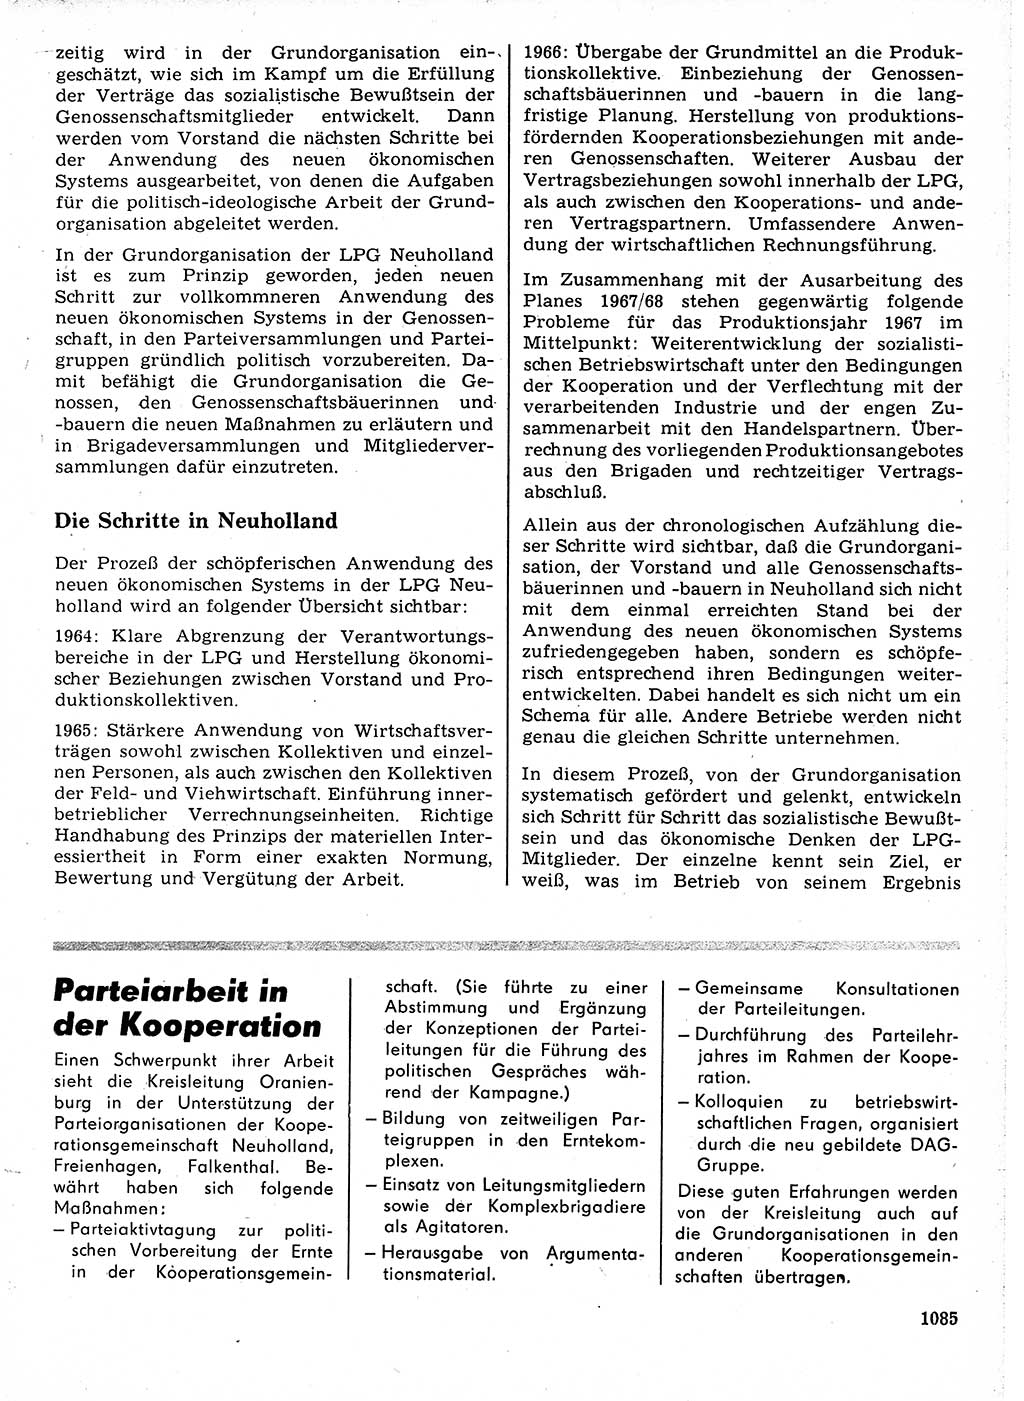 Neuer Weg (NW), Organ des Zentralkomitees (ZK) der SED (Sozialistische Einheitspartei Deutschlands) für Fragen des Parteilebens, 21. Jahrgang [Deutsche Demokratische Republik (DDR)] 1966, Seite 1085 (NW ZK SED DDR 1966, S. 1085)